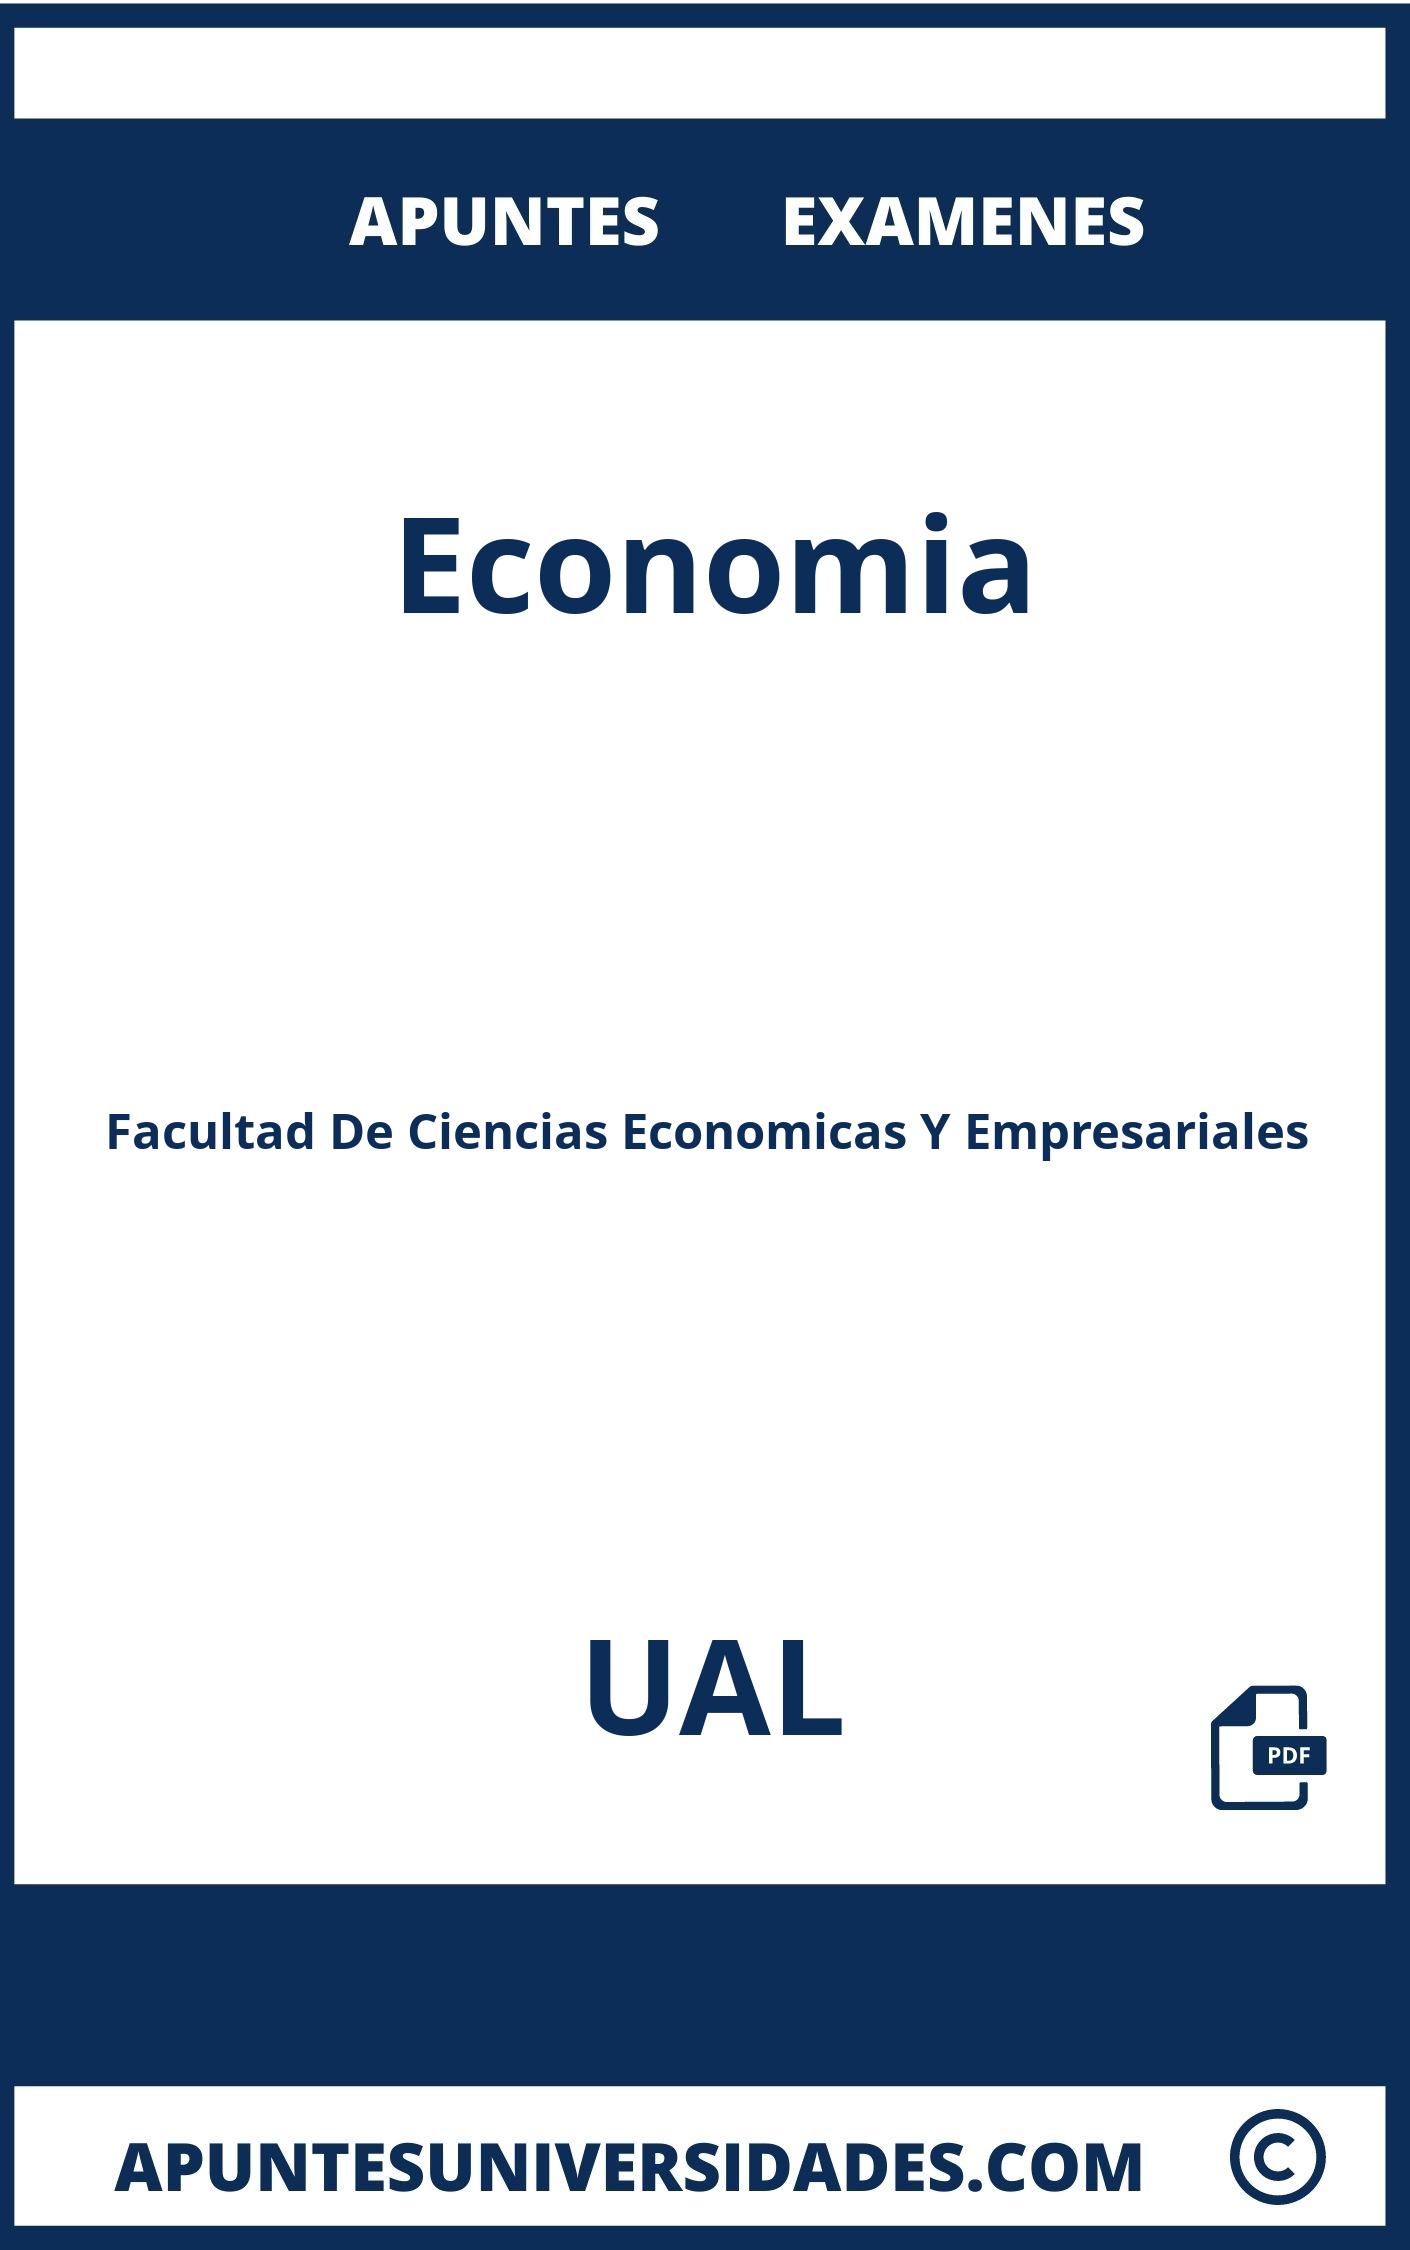 Examenes y Apuntes Economia UAL